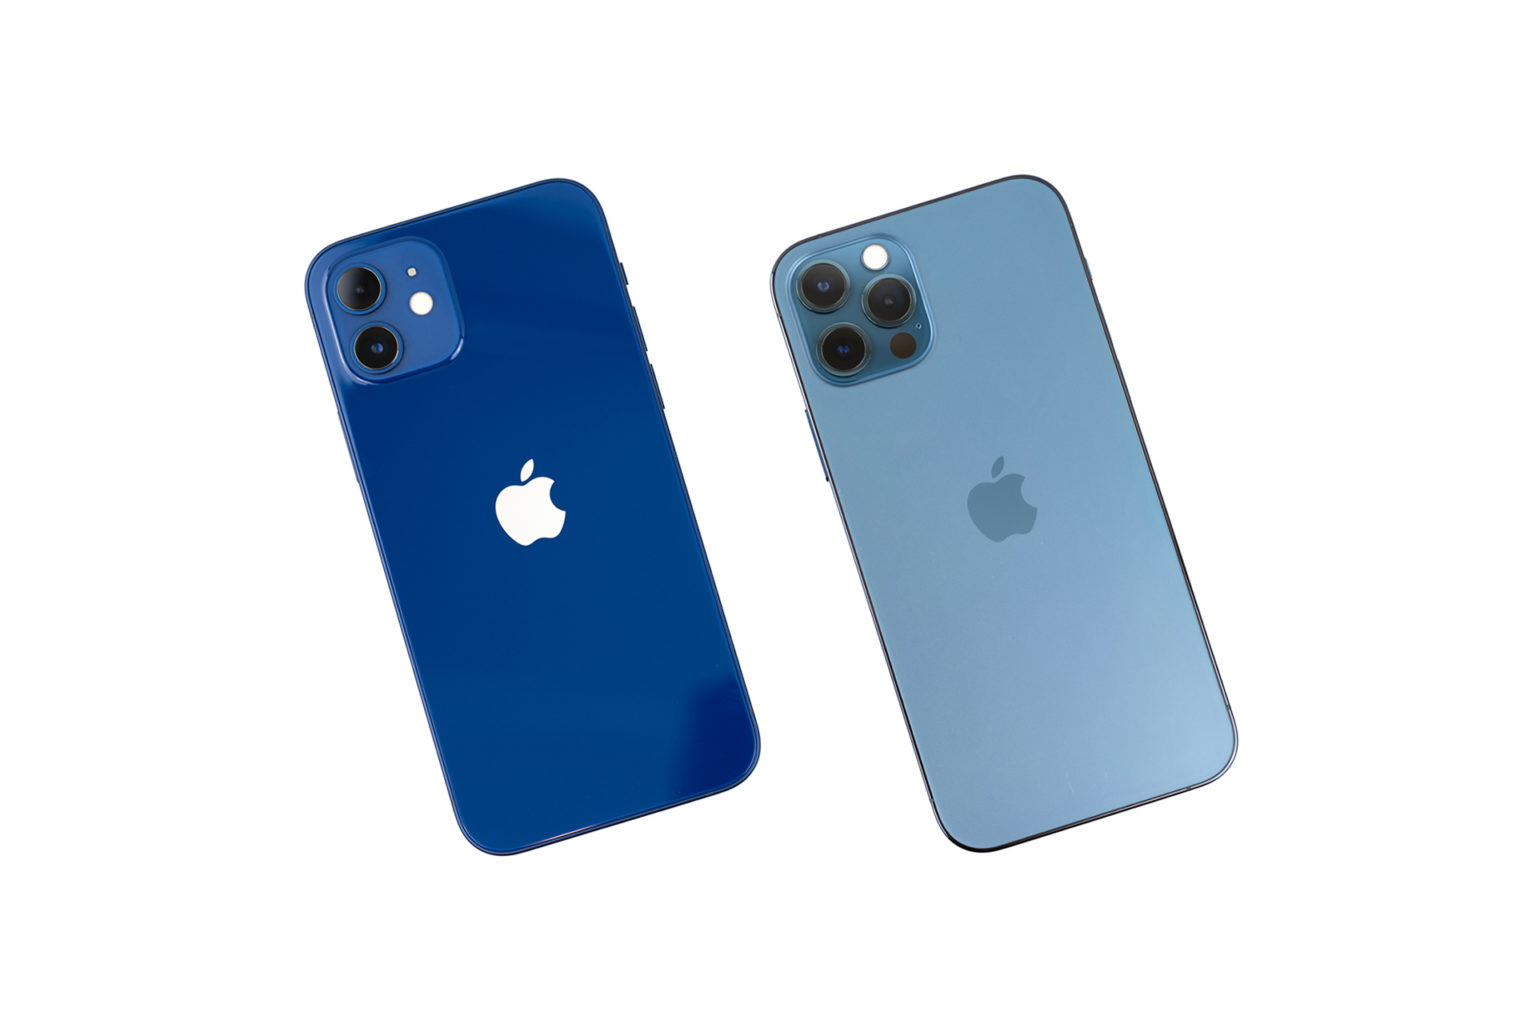 iPhone 12 ブルーとiPhone 12 Pro パシフィックブルーの色を比較してみた | でこにく